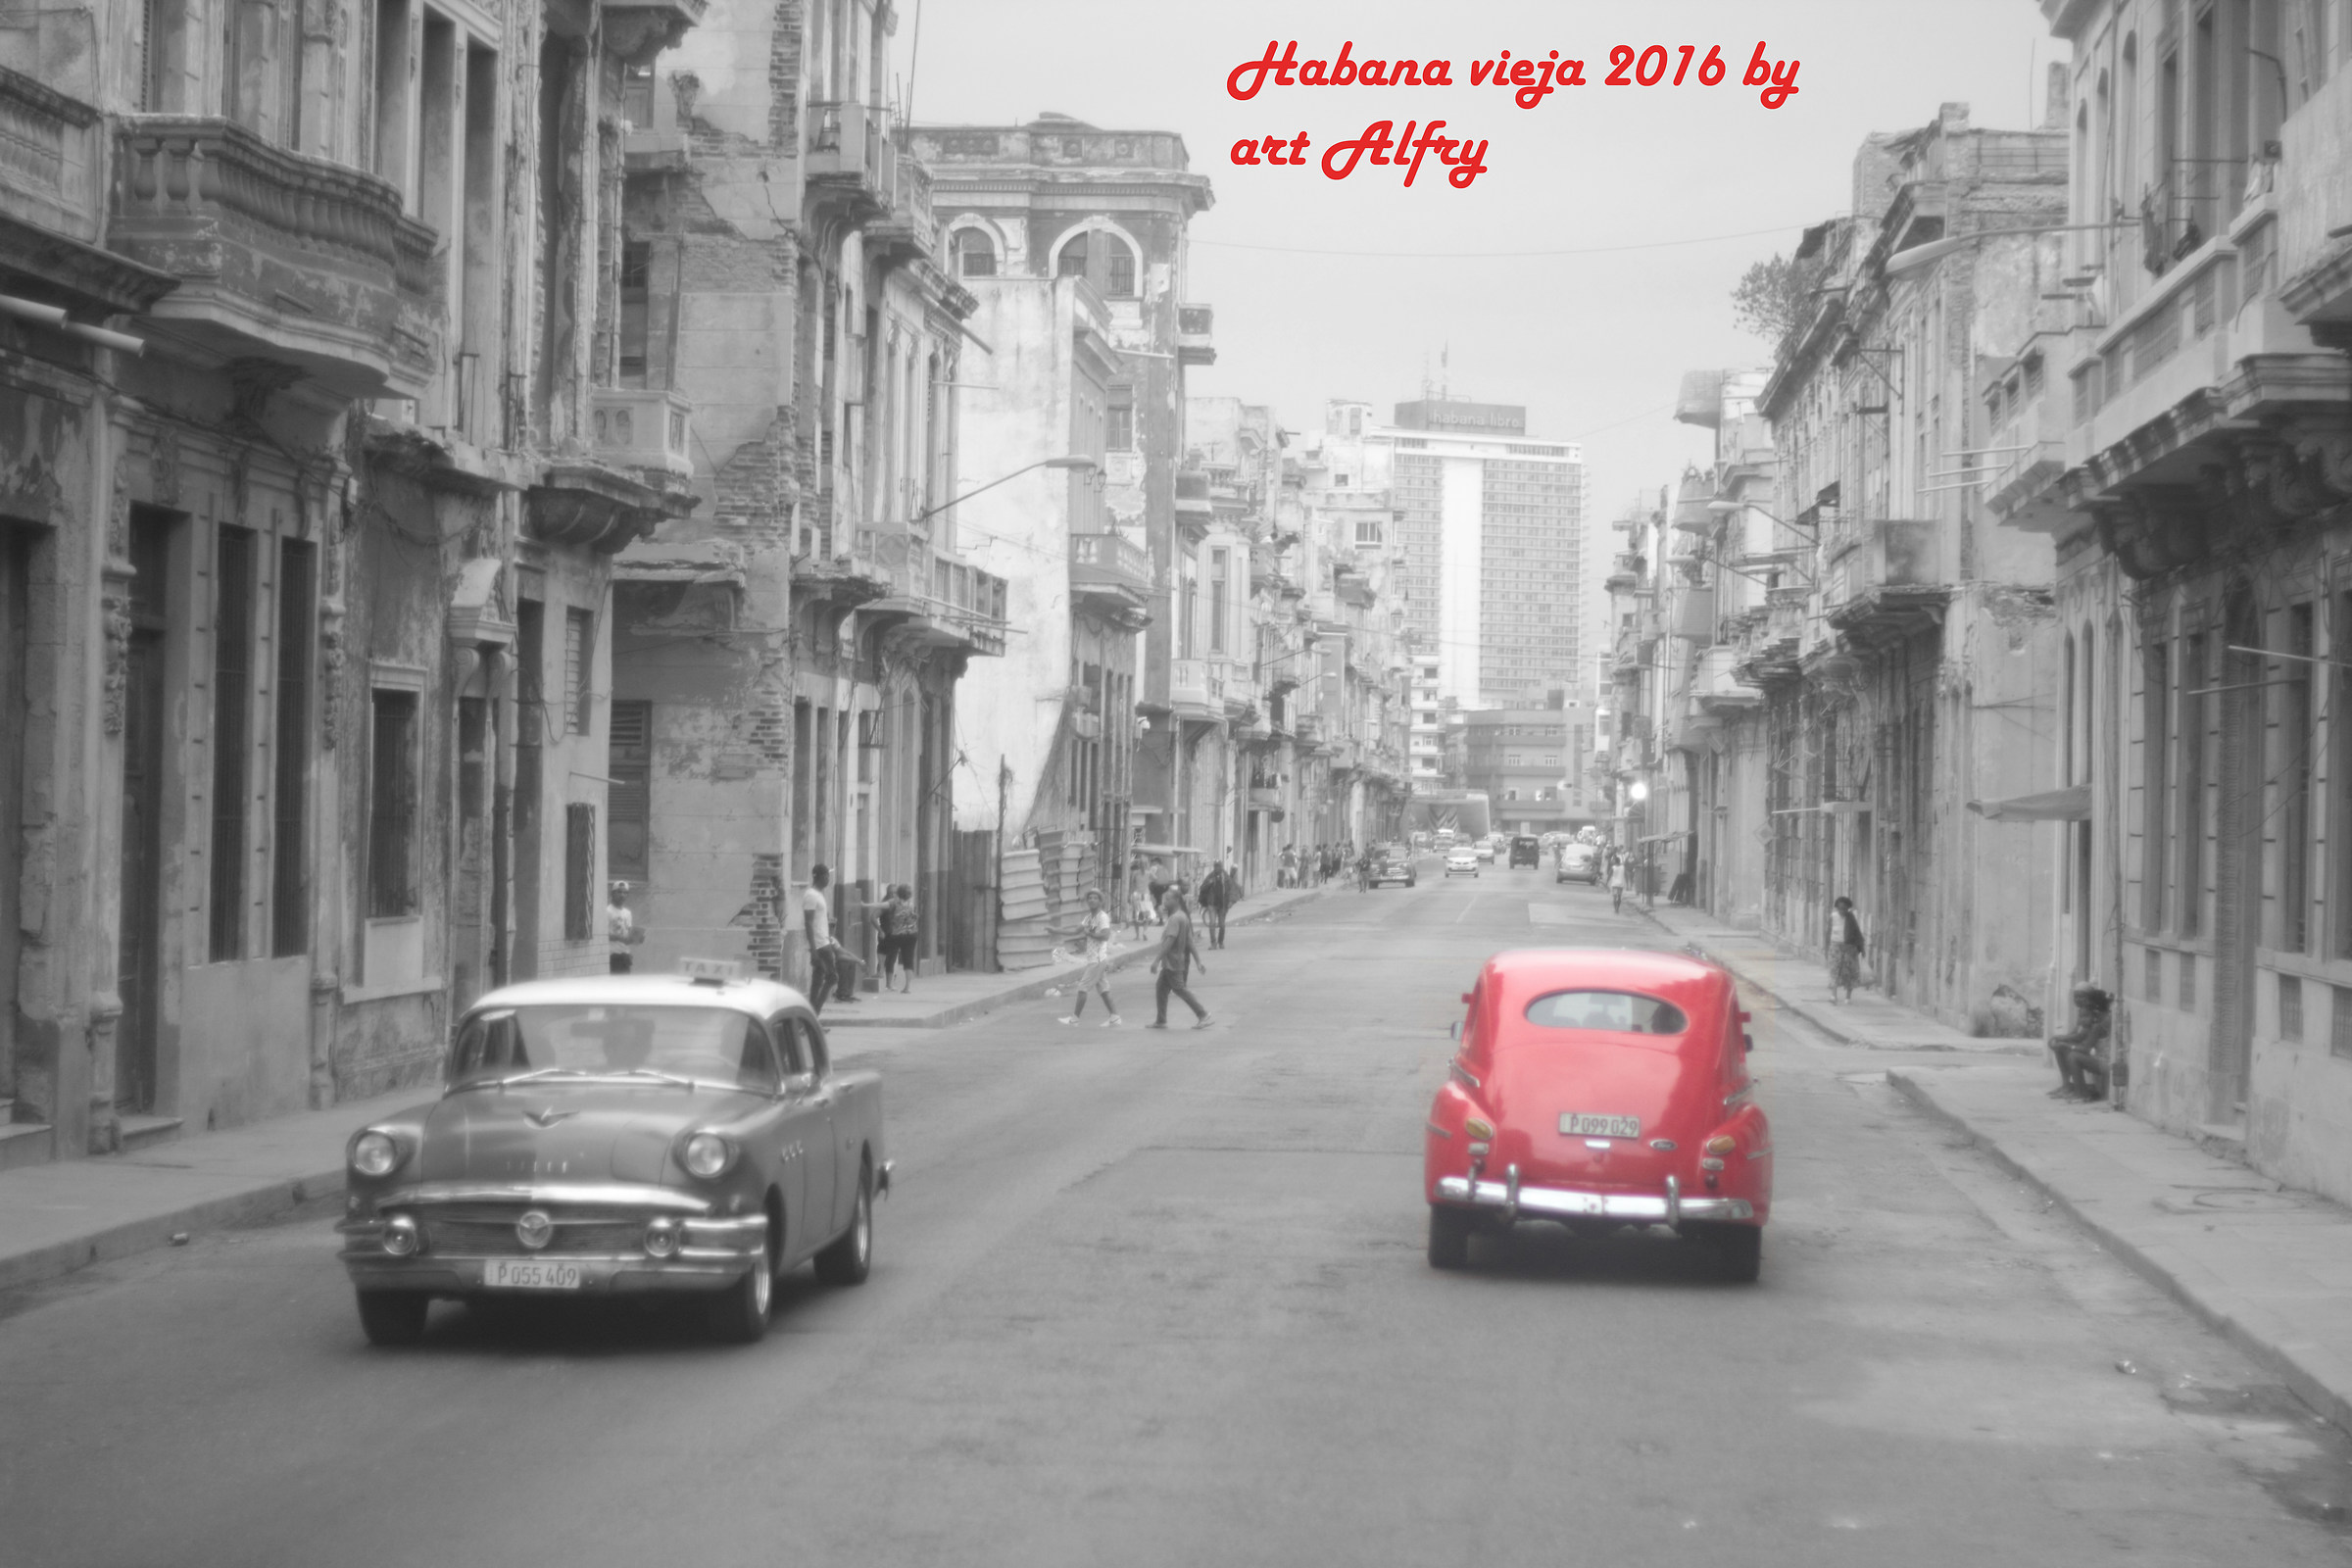 Almendrones rojos en la Habana vieja 2016...